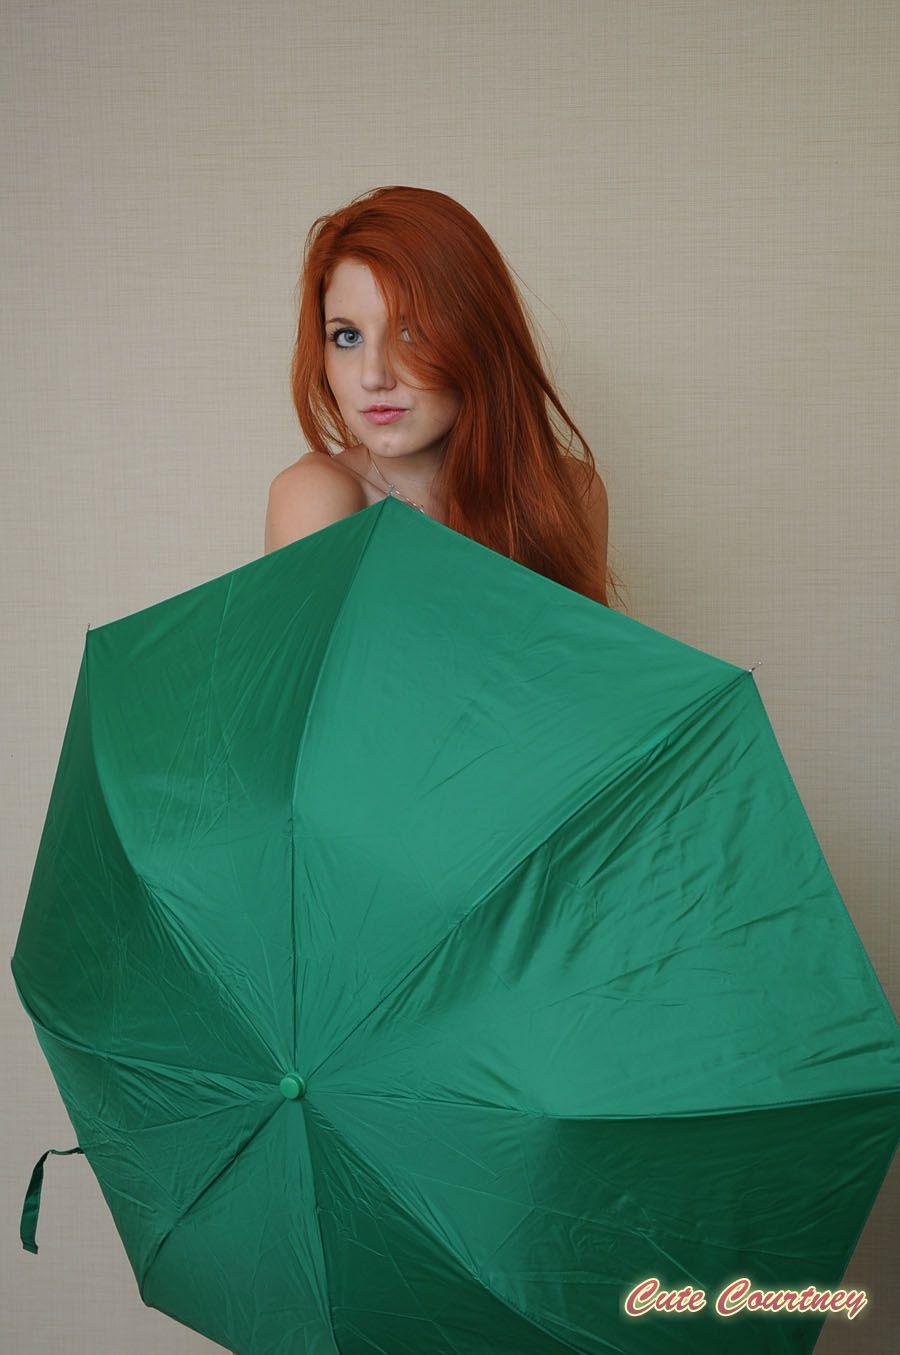 Bilder von der süßen Courtney, die mit einem Regenschirm kreativ wird
 #53899198